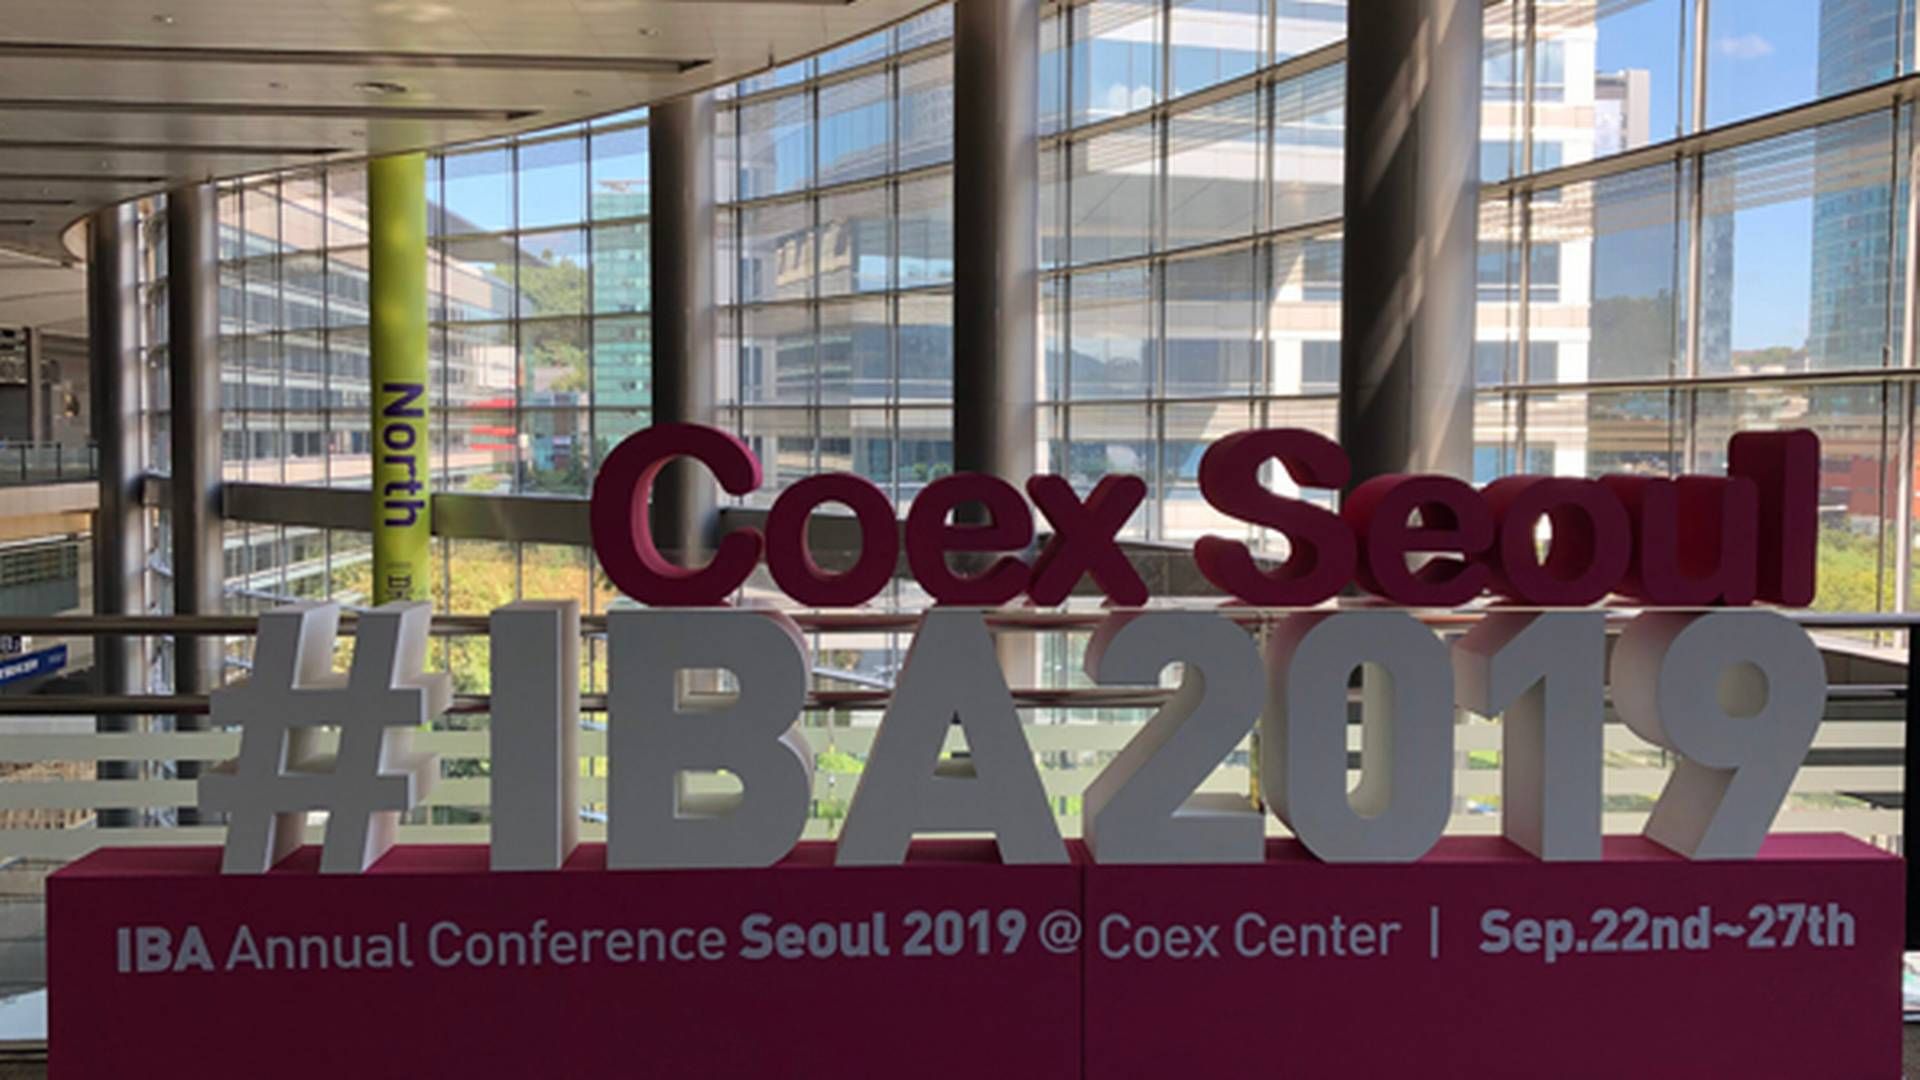 Denne uge mødes flere tusinde advokater fra hele verden til IBA's årlige konference, der i år afholdes i Seoul, Sydkorea. | Foto: Maiken Reimer Rønneberg